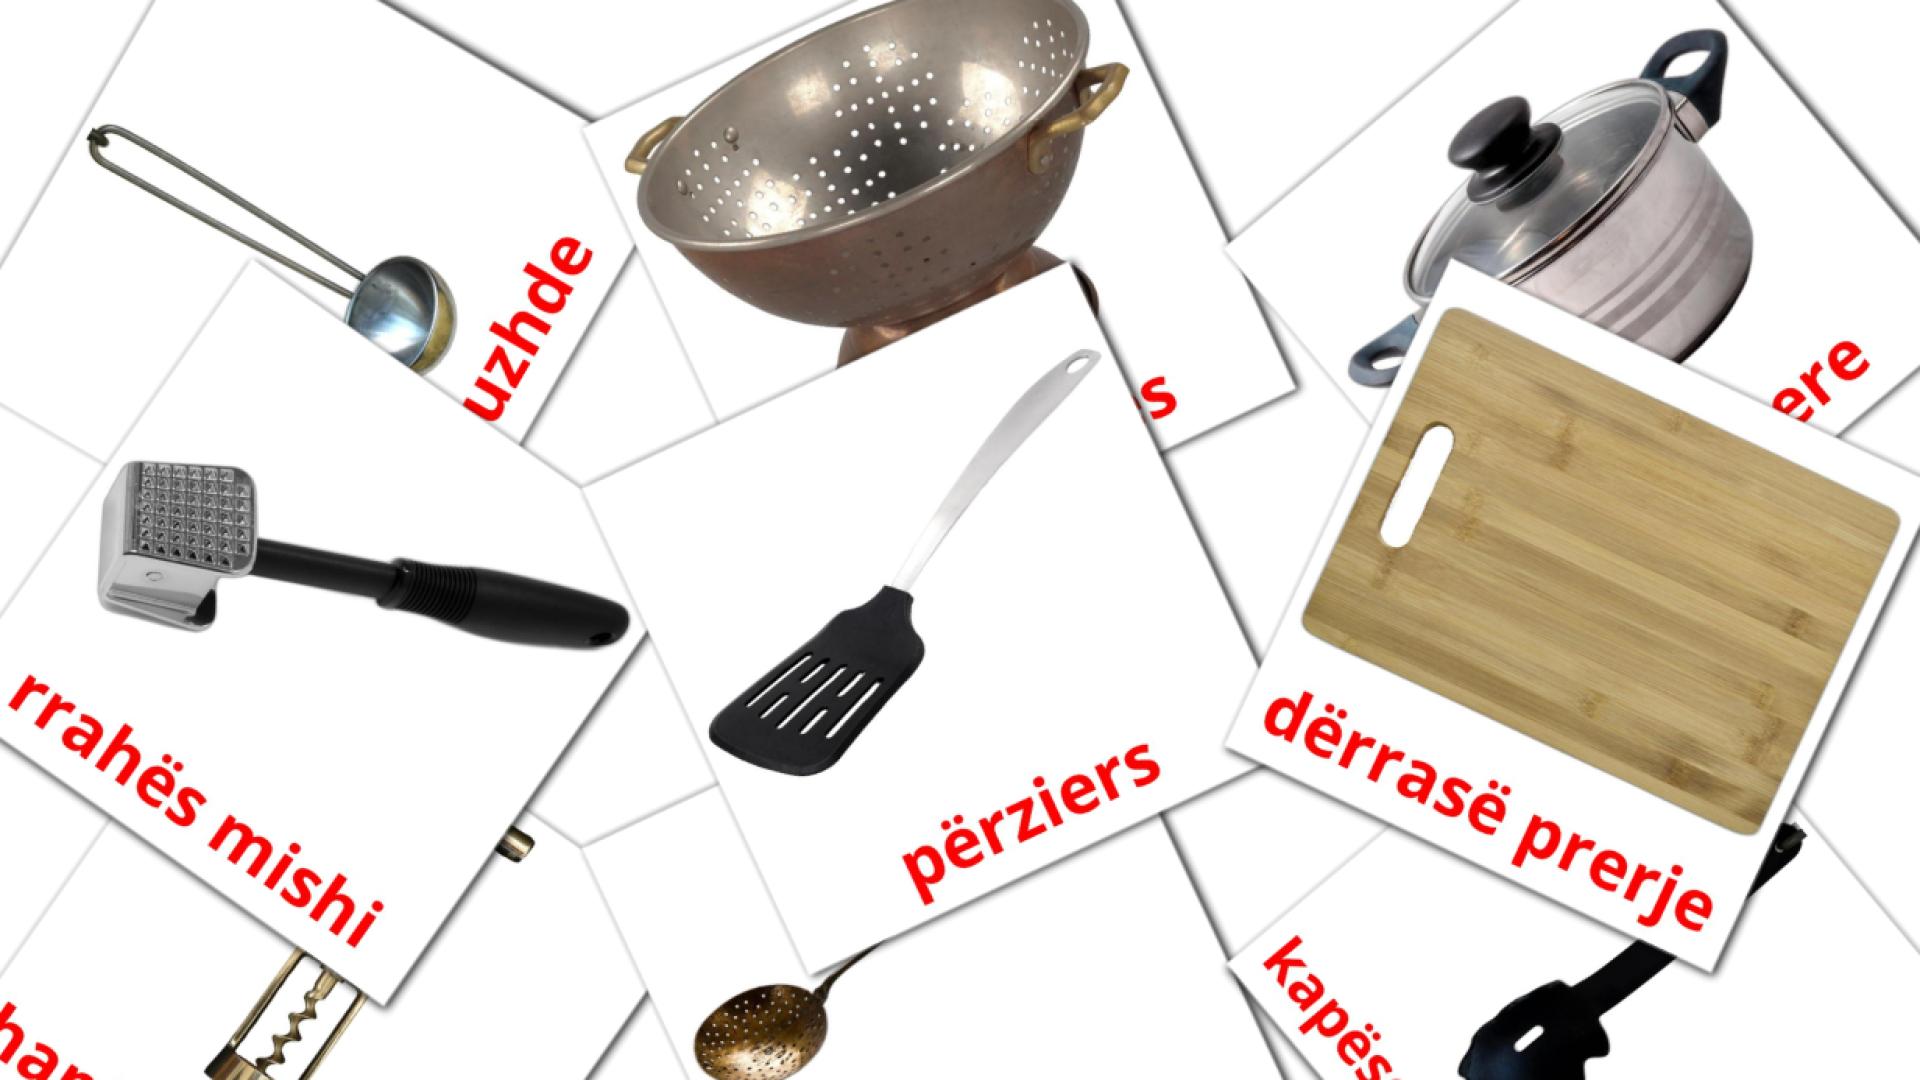 Utensílios de cozinha - Cartões de vocabulário albanês